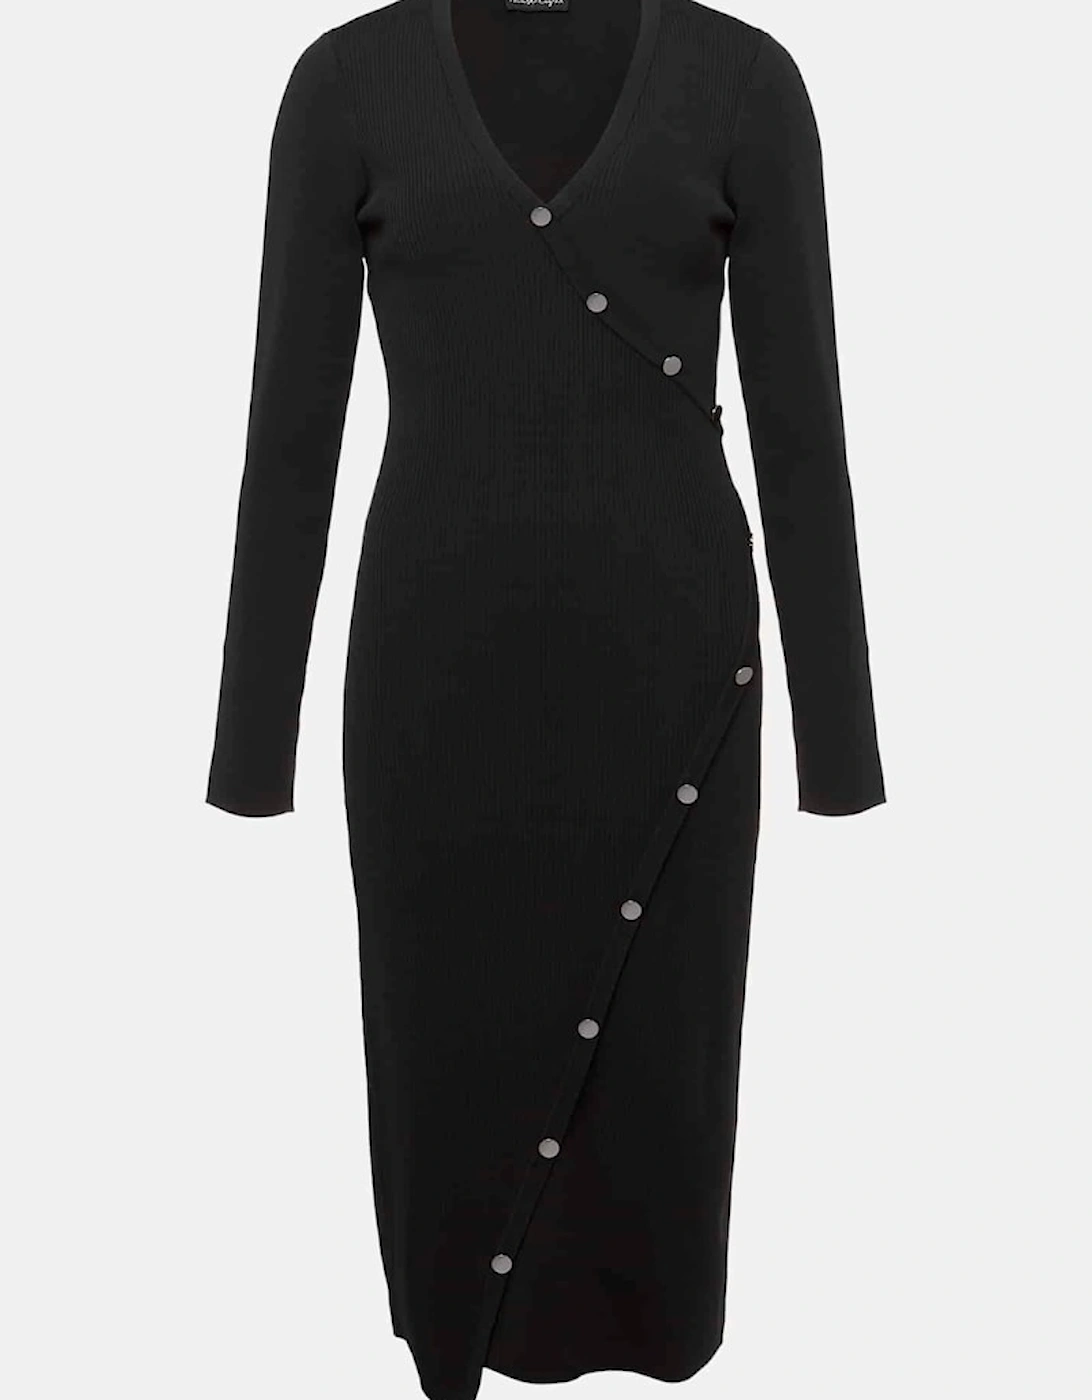 Kellia Black Knitted Midi Dress